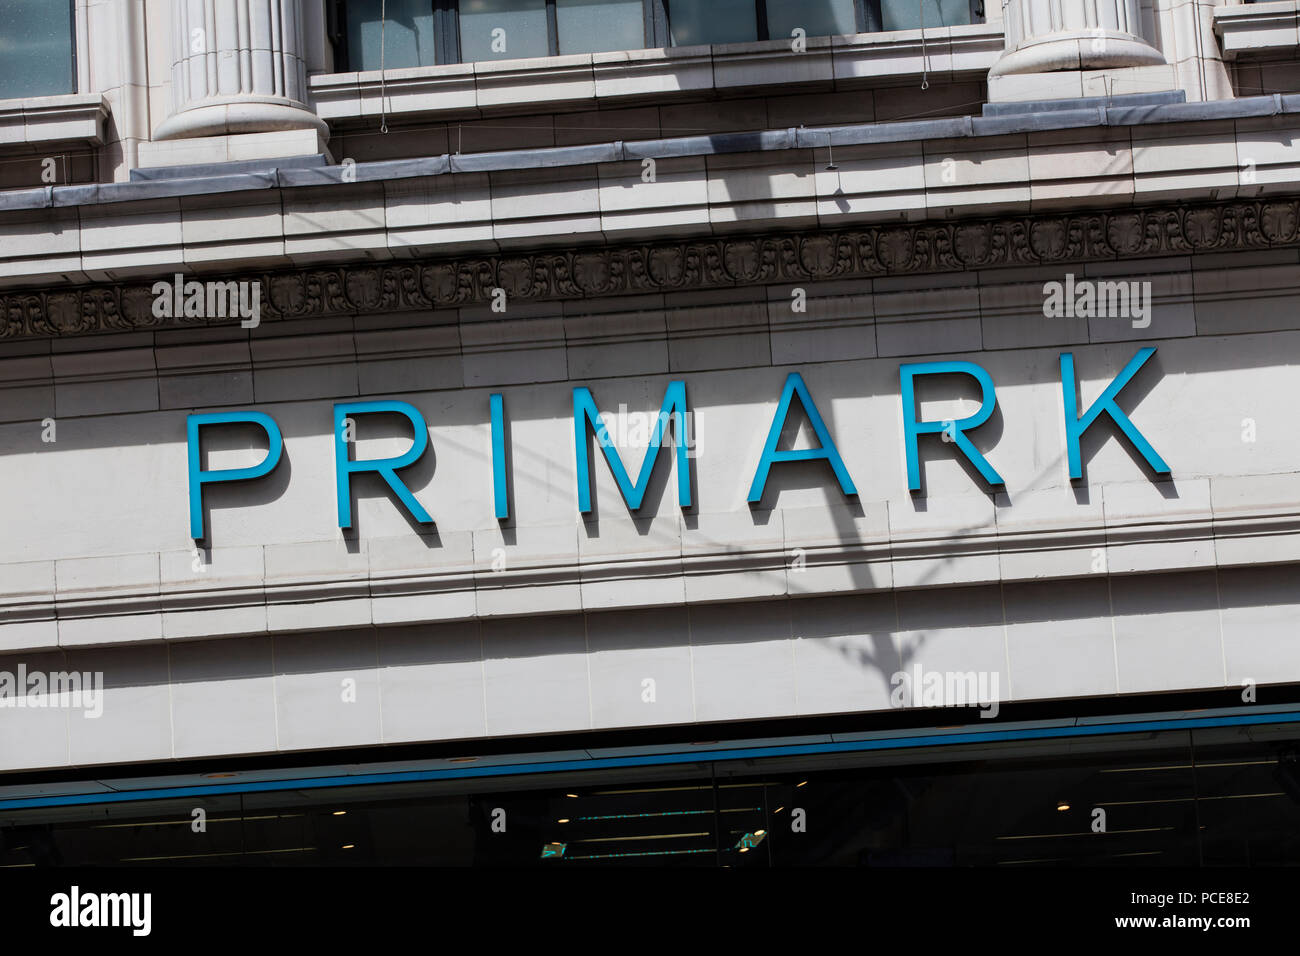 Londres, Royaume-Uni - 31 juillet 2018 : Primark magasin de vêtements/sur Oxford Street, au centre de Londres. Banque D'Images